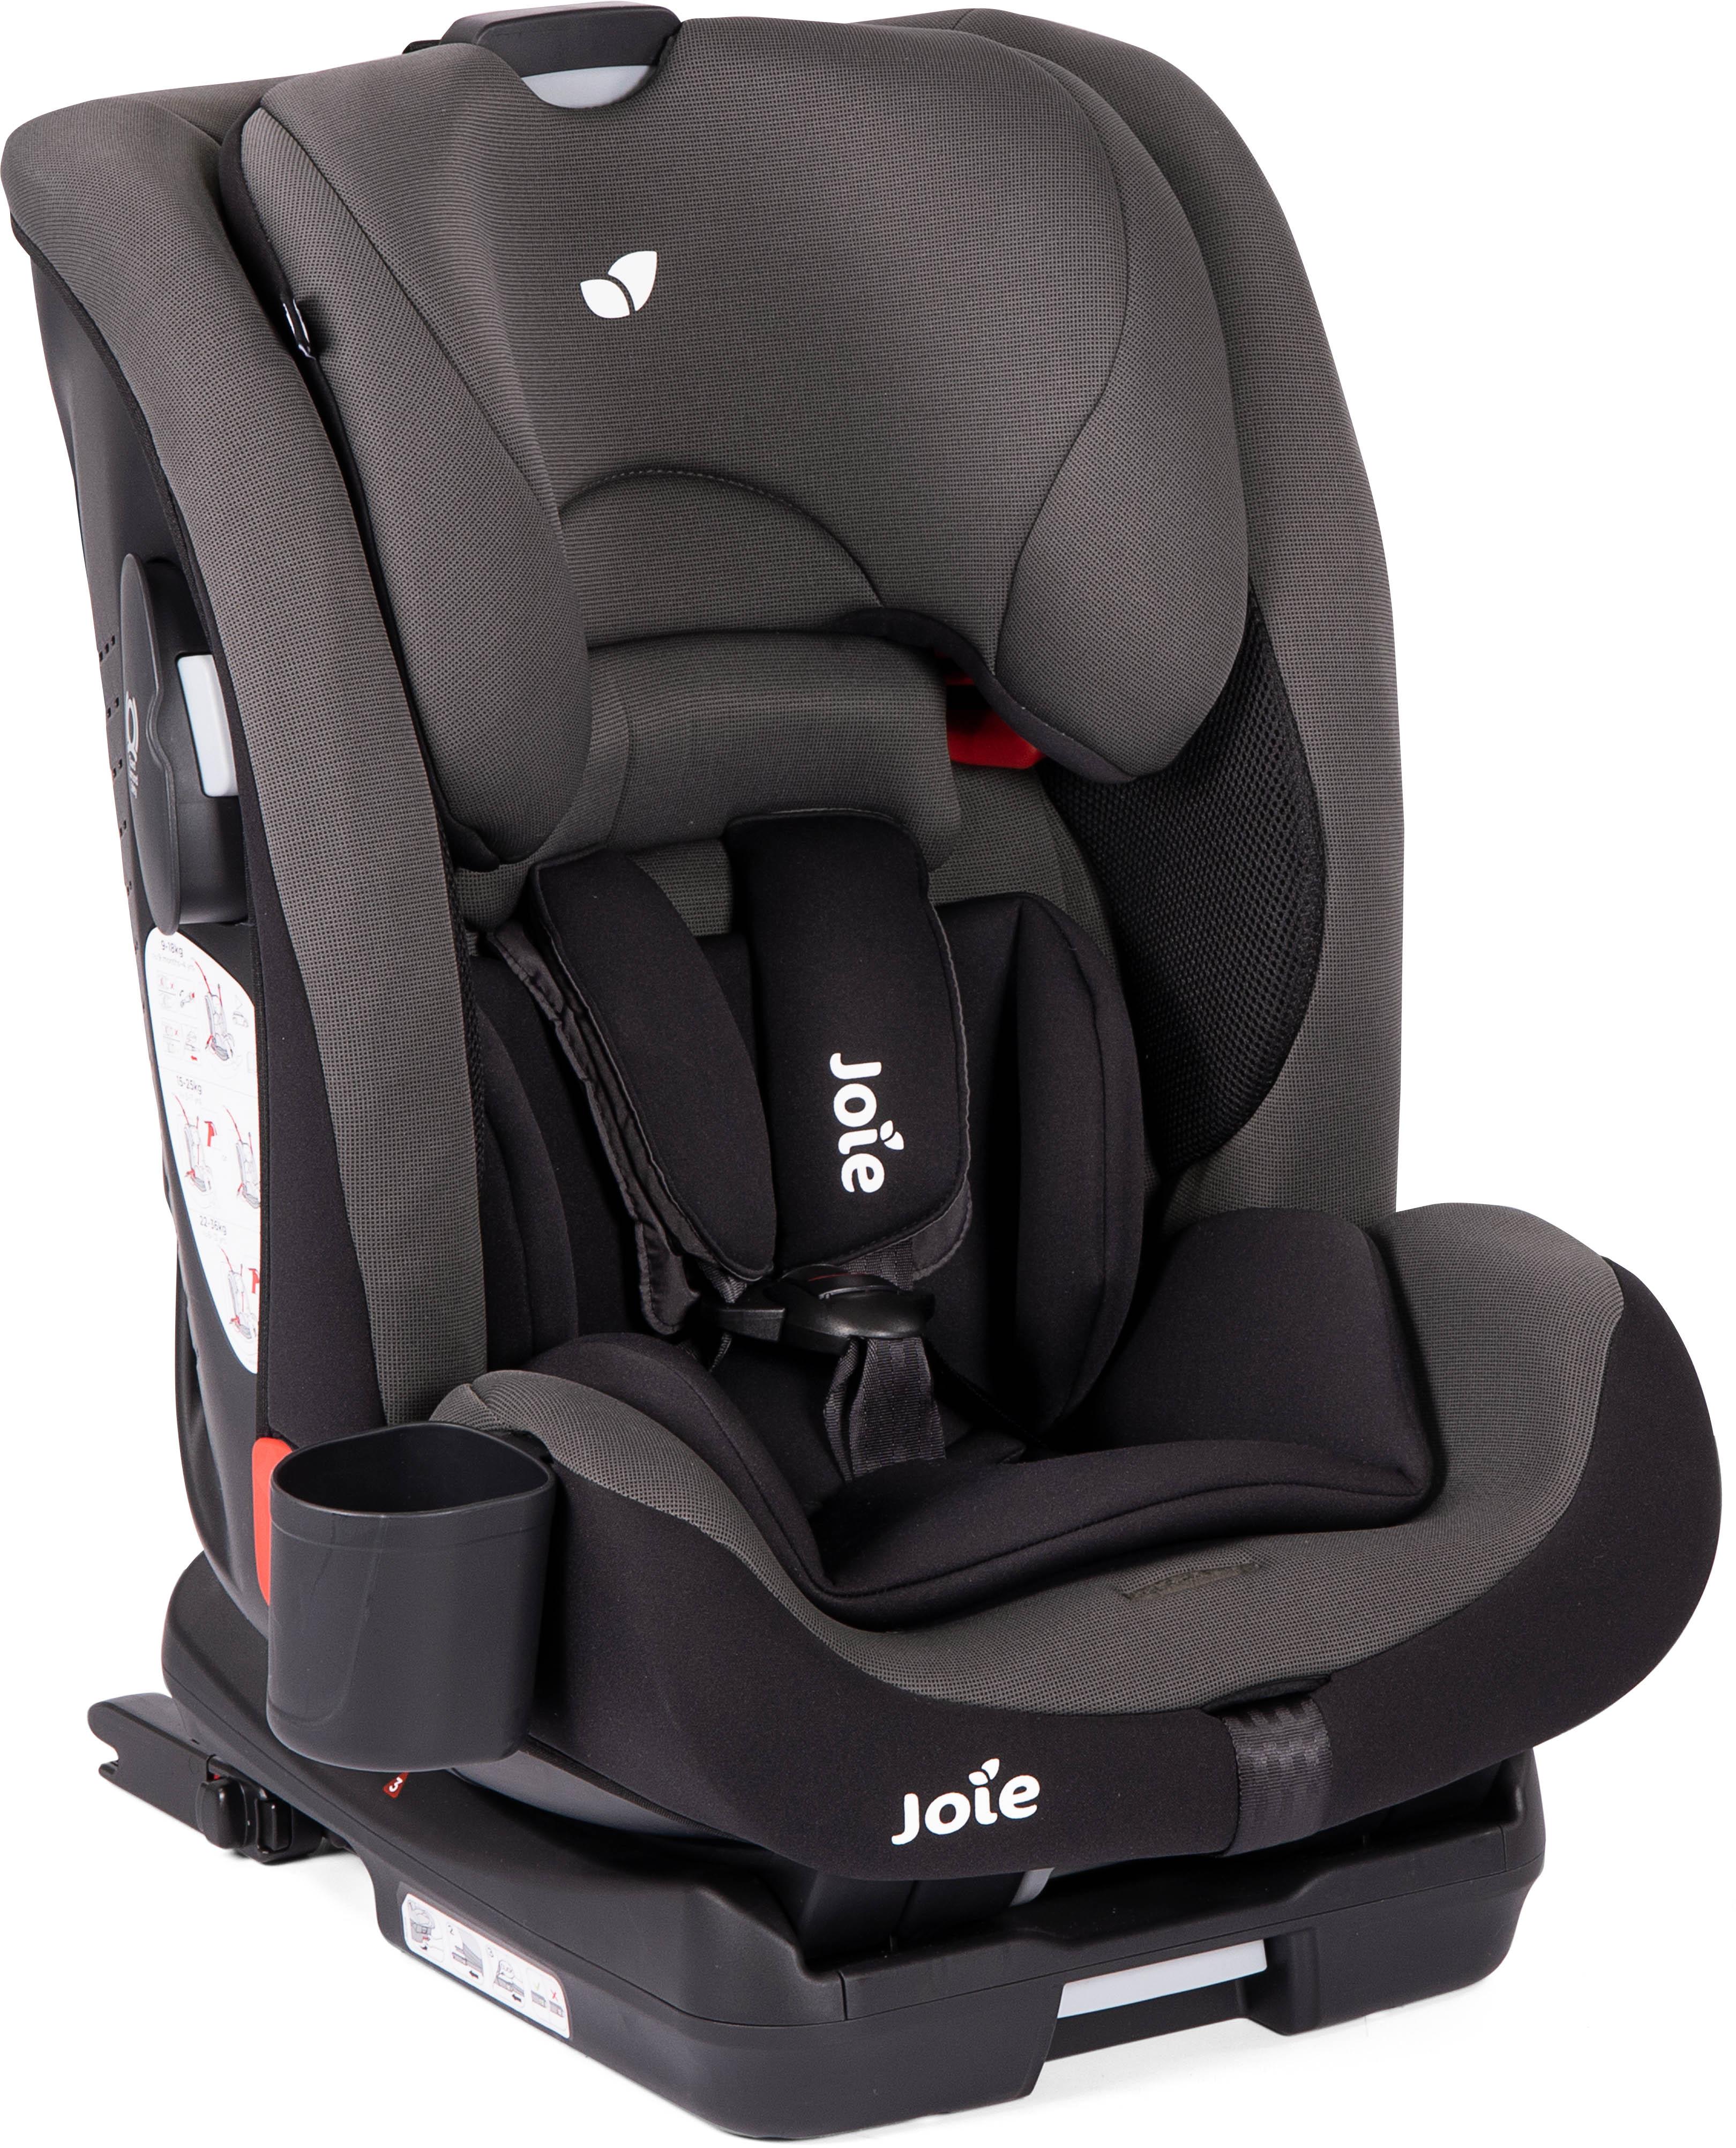 joie 2 3 car seat isofix